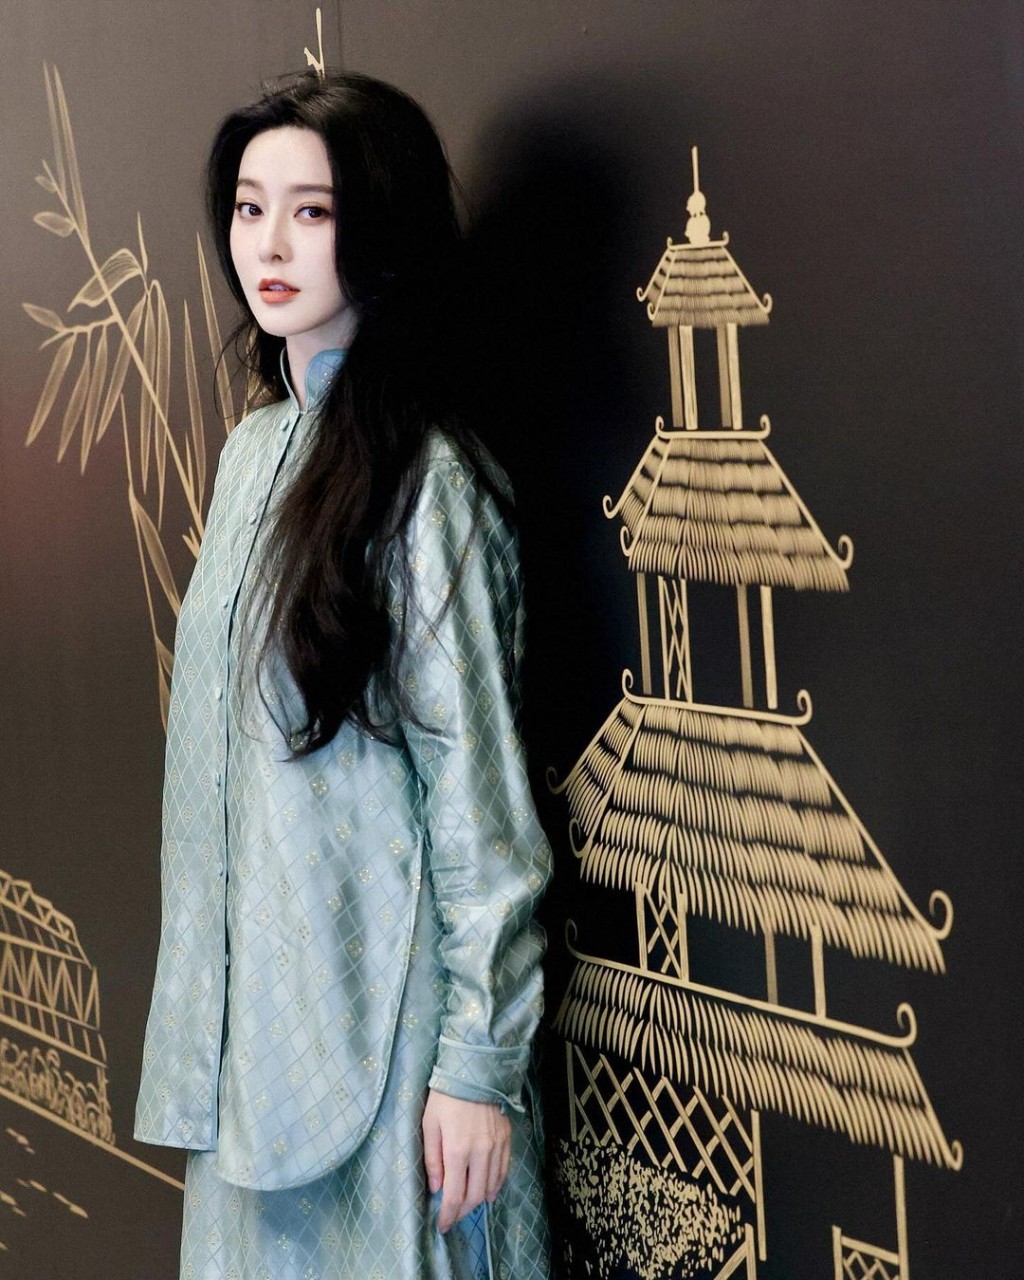 至於第三套由中國設計師品牌M ESSENTIAL最新系列的滄浪緹花新中式套裝終於獲得網民大讚。